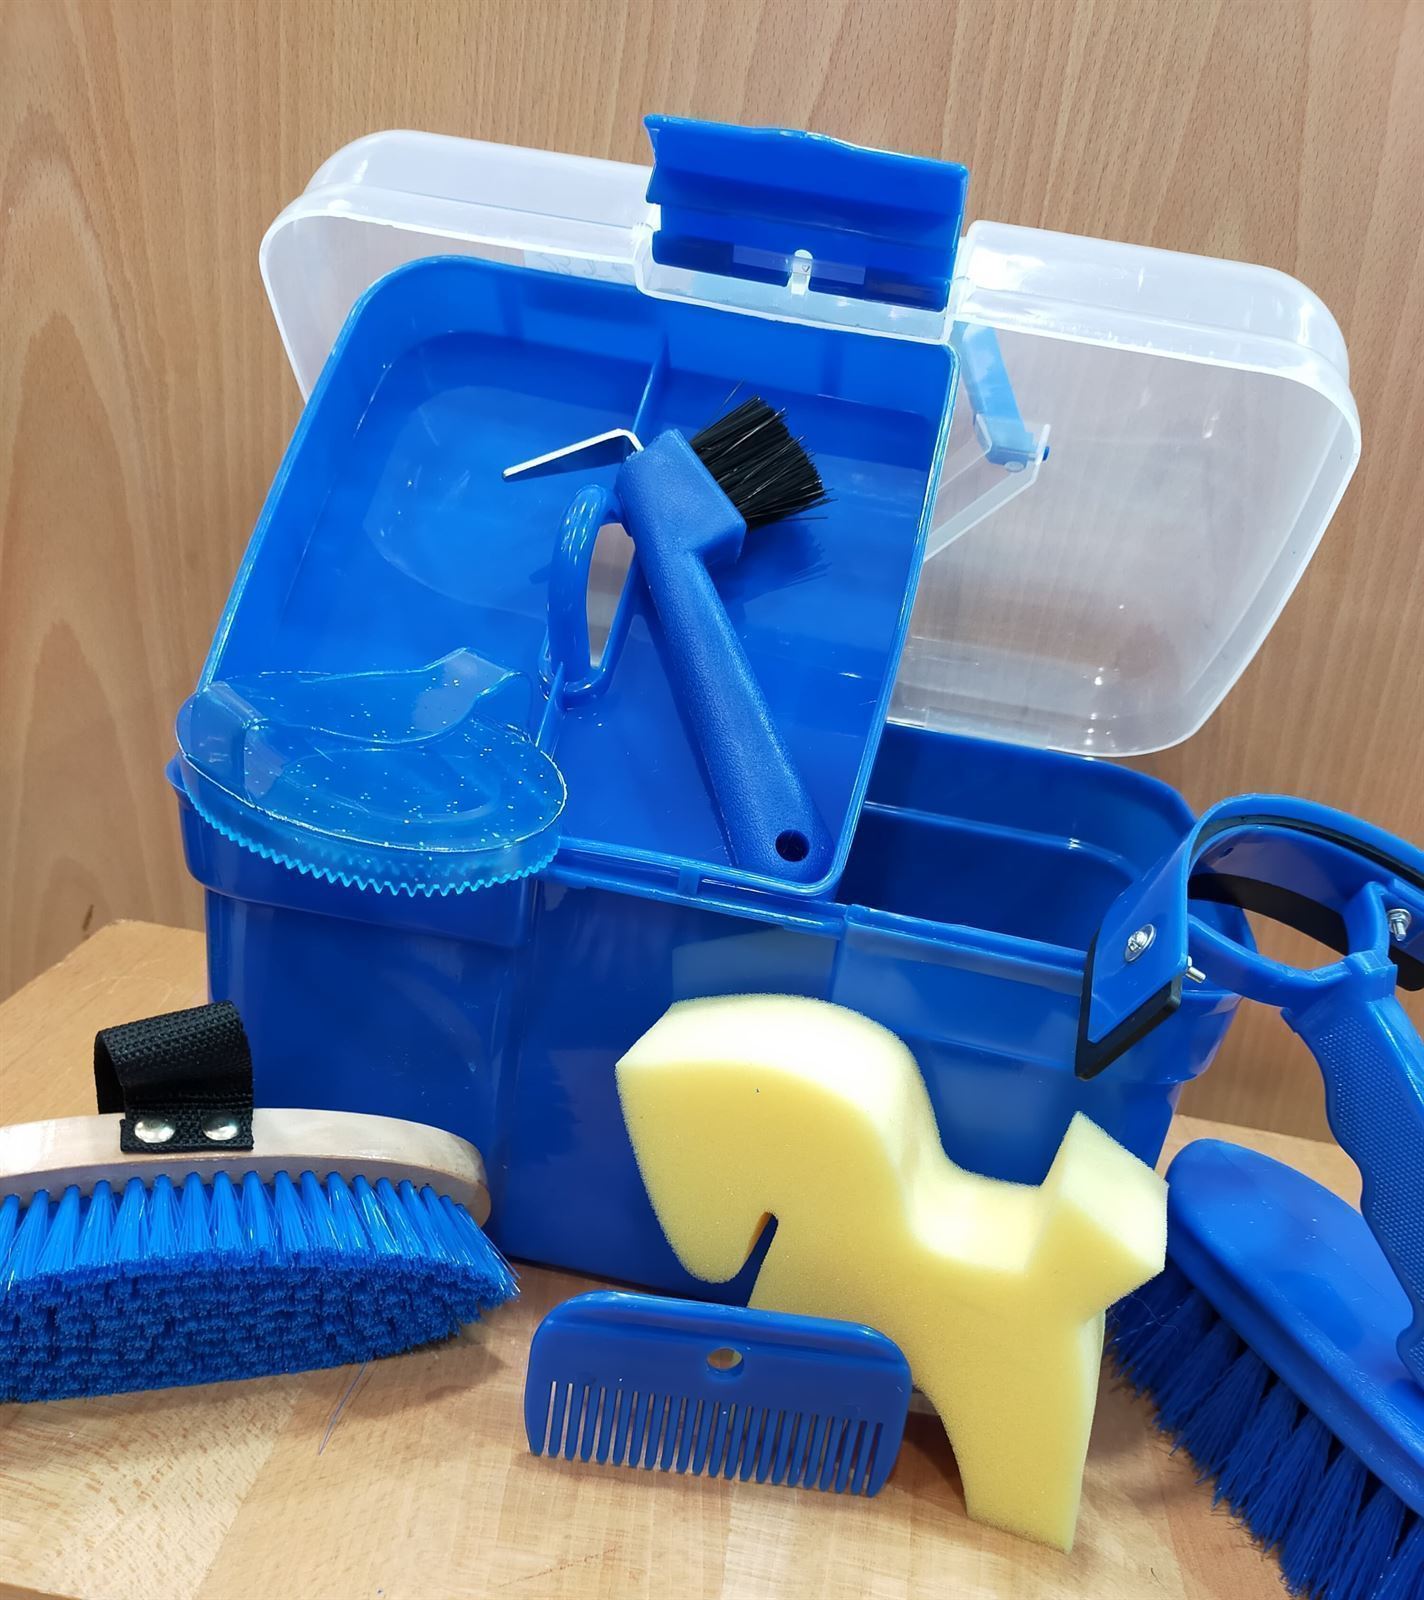 Caja útiles de limpieza HKM Sports Equipment, color azulón - Imagen 2